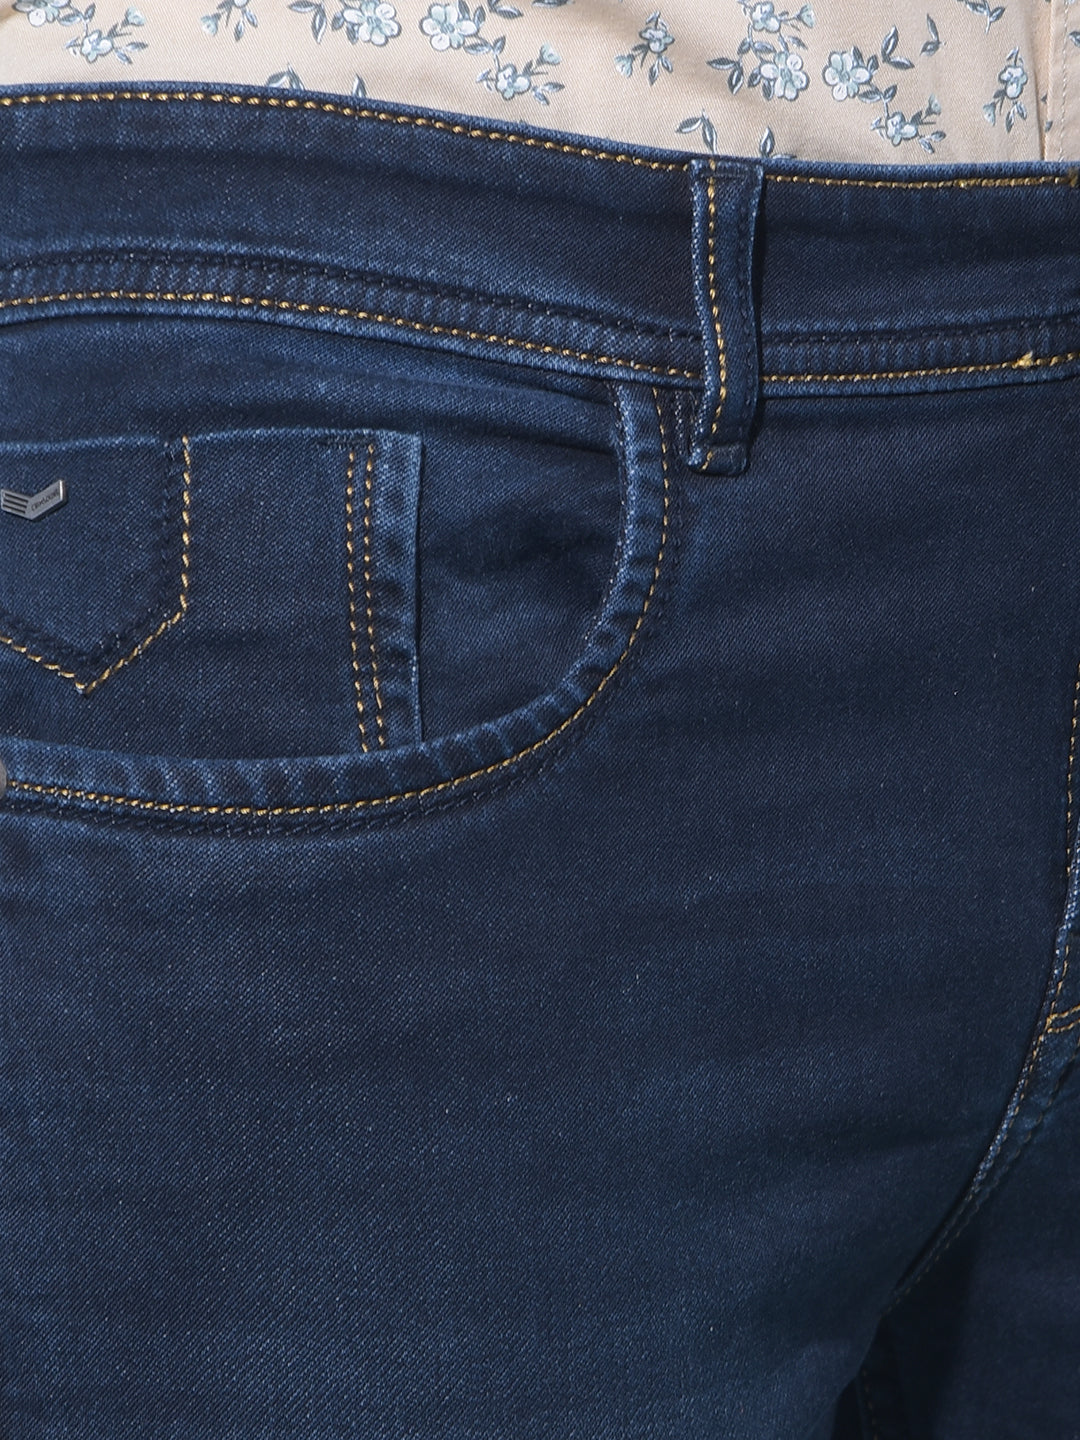 Navy Blue Stretchable Cotton Jeans-Men Jeans-Crimsoune Club